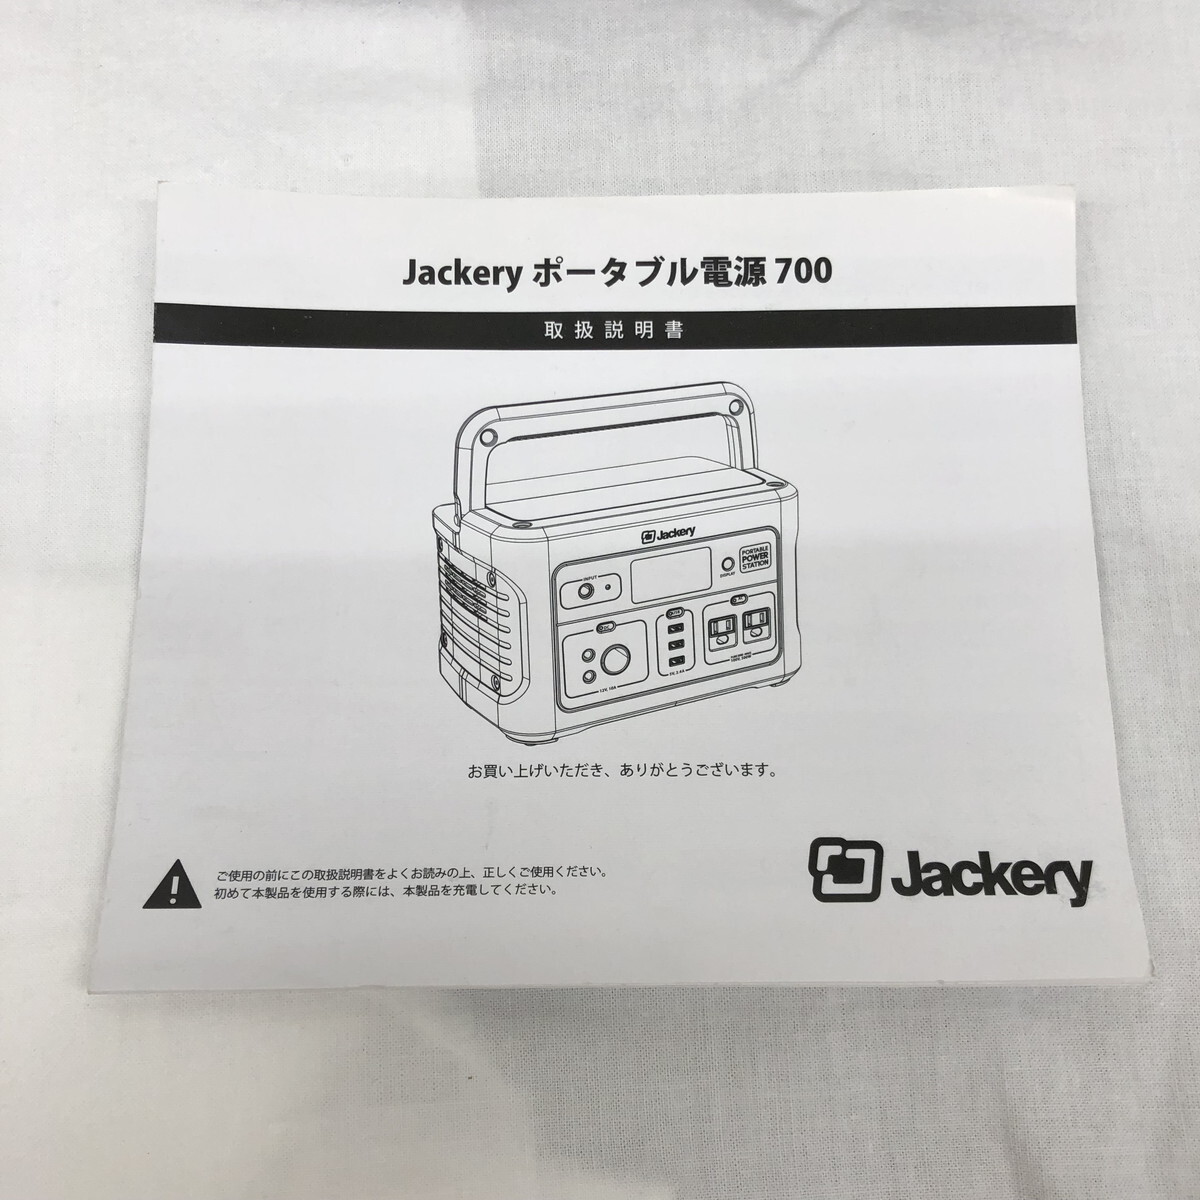 Jackeryjakli портативный источник питания 700 аккумулятор . батарейка уличный кемпинг текущее состояние товар (N60411_11_165h)